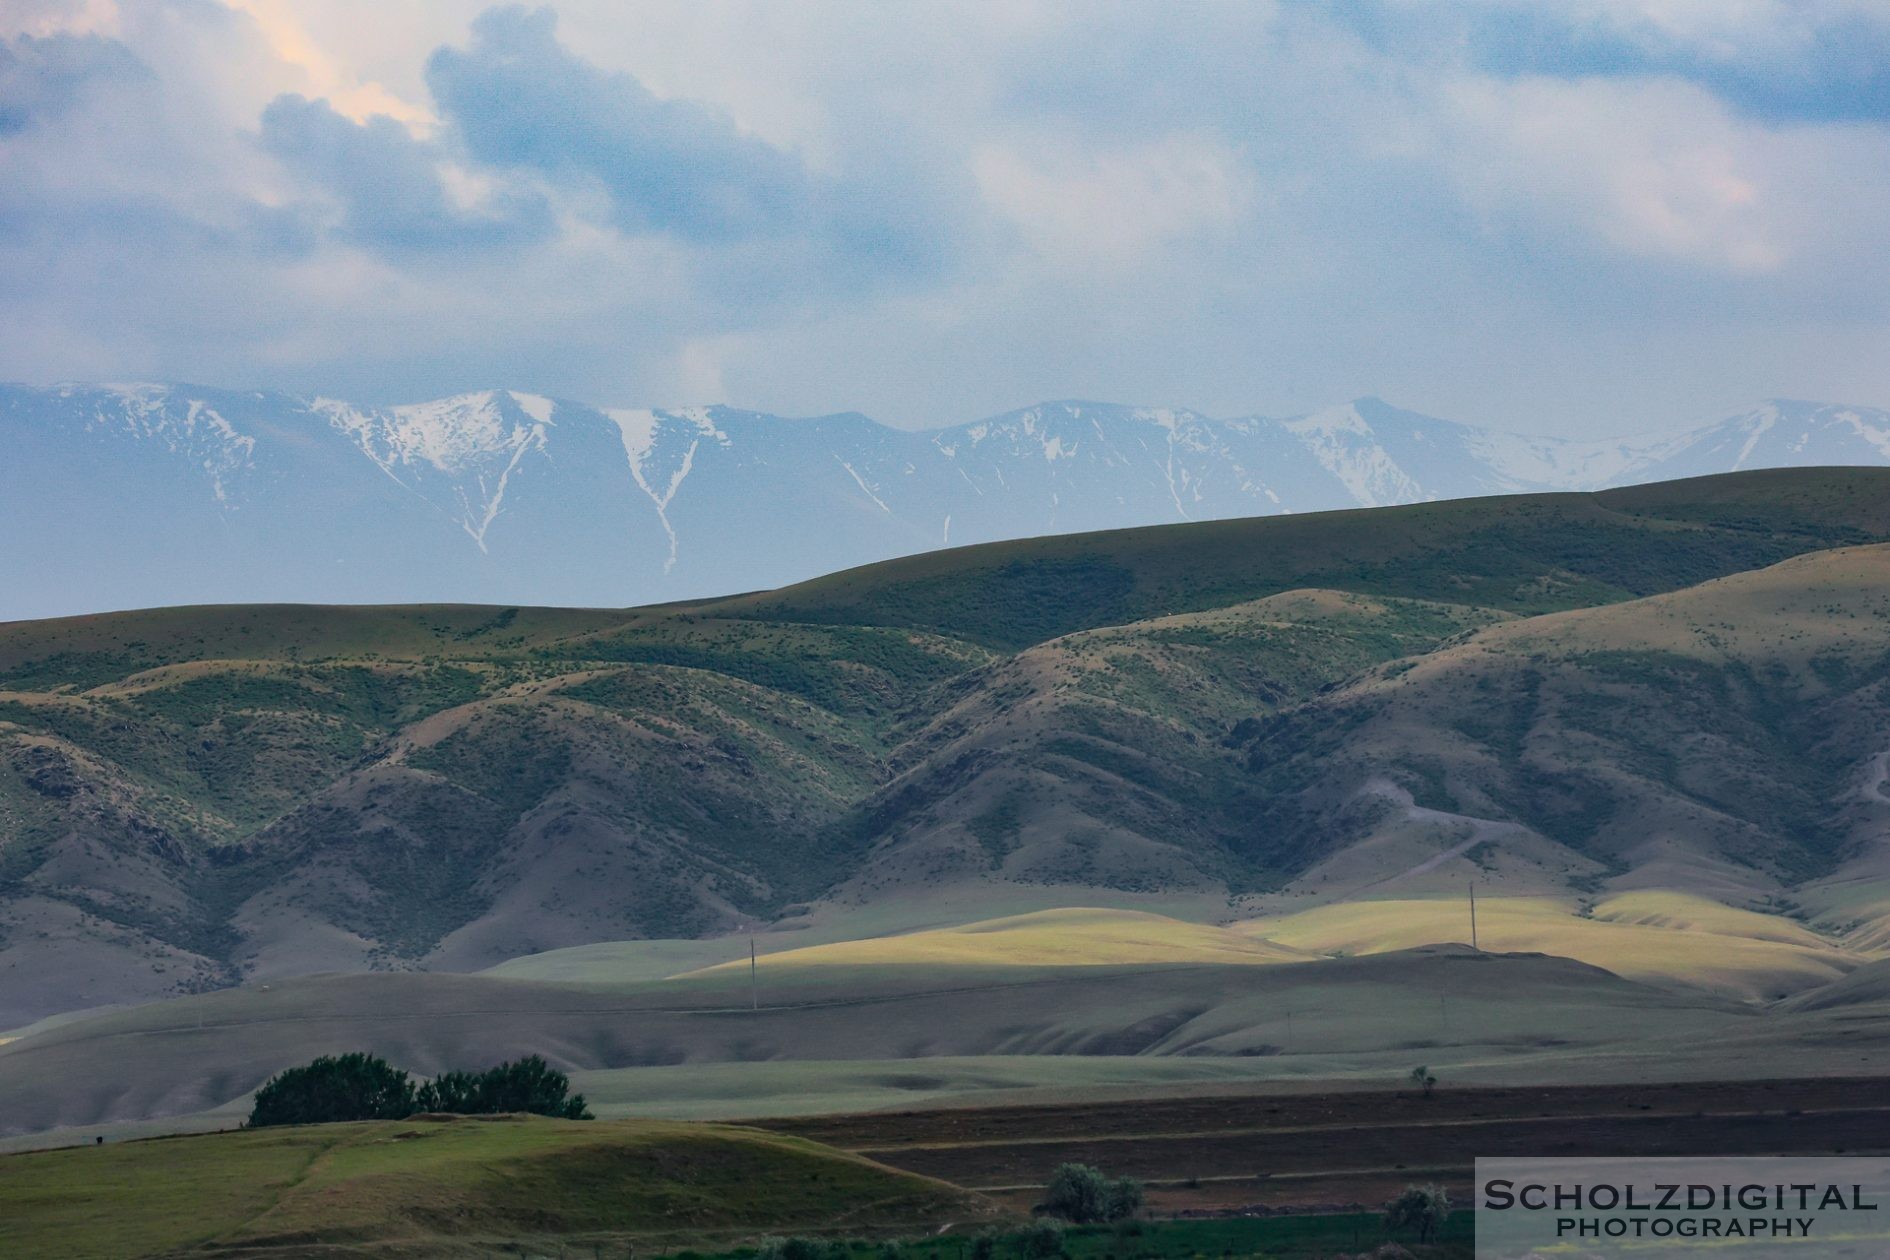 Kasachstan und im Hintergrund die Tina Shan Gebirge